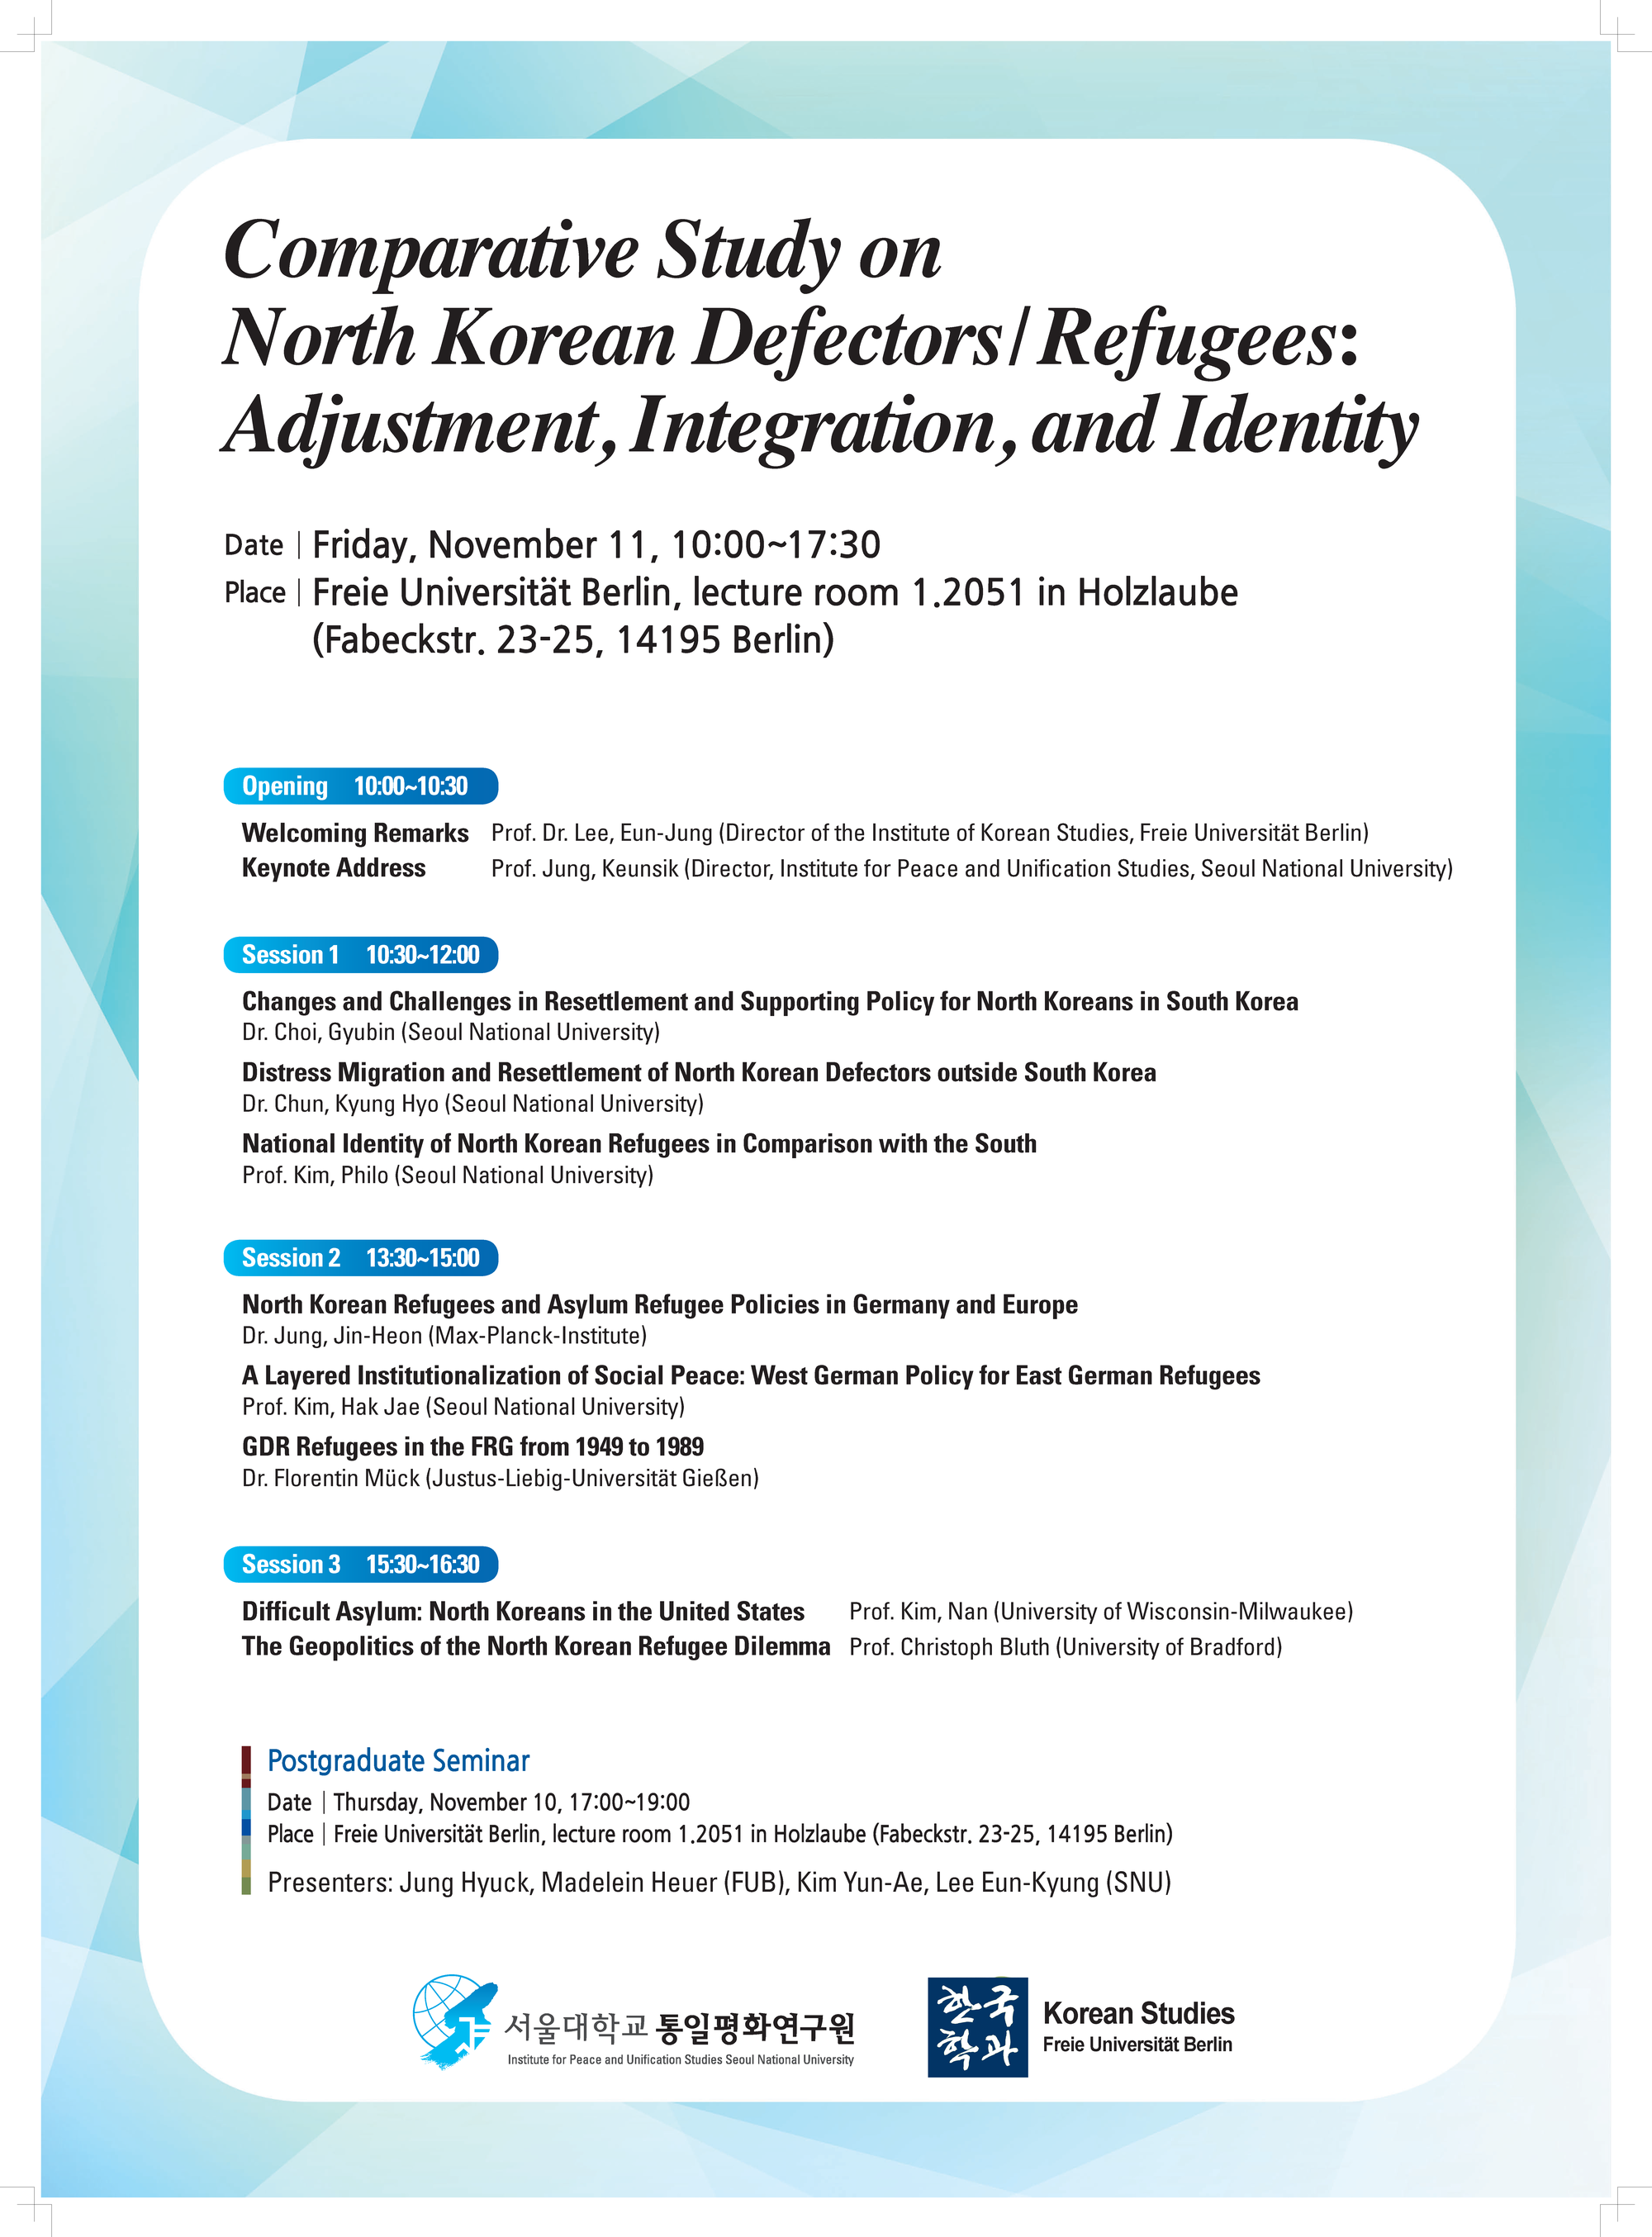 Comparitive-Study-on-North-Korean-Defectors